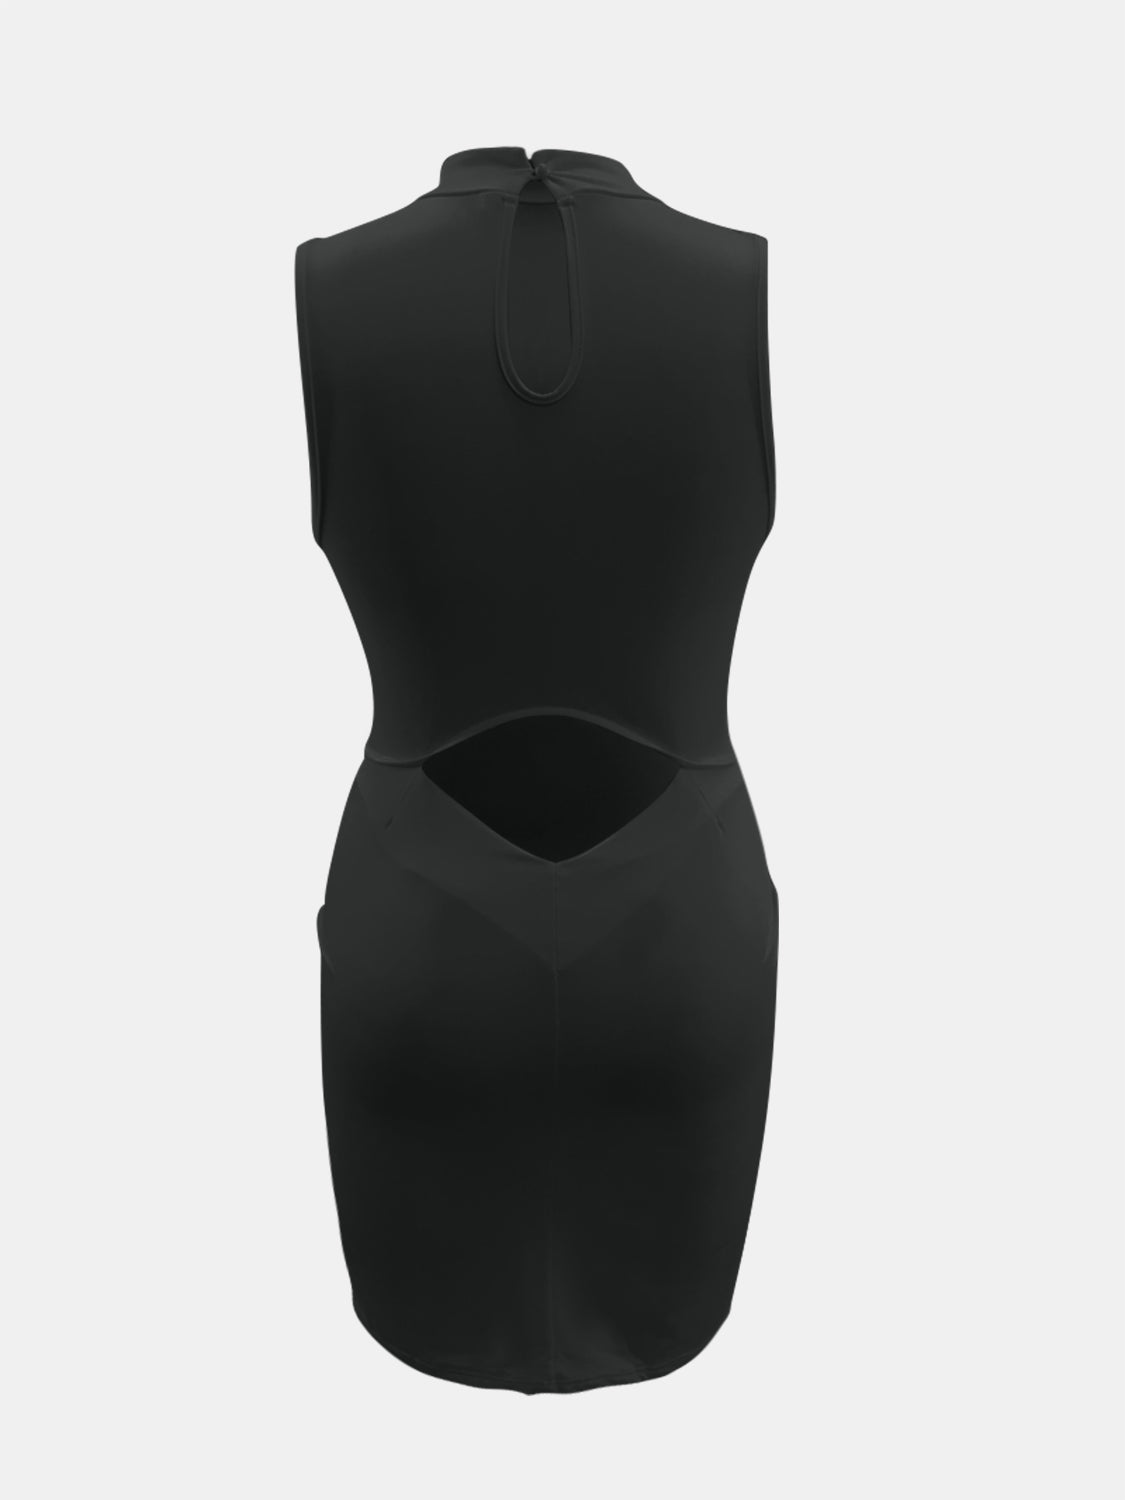 Plus Size Cutout Scoop Neck Sleeveless Dress – KesleyBoutique